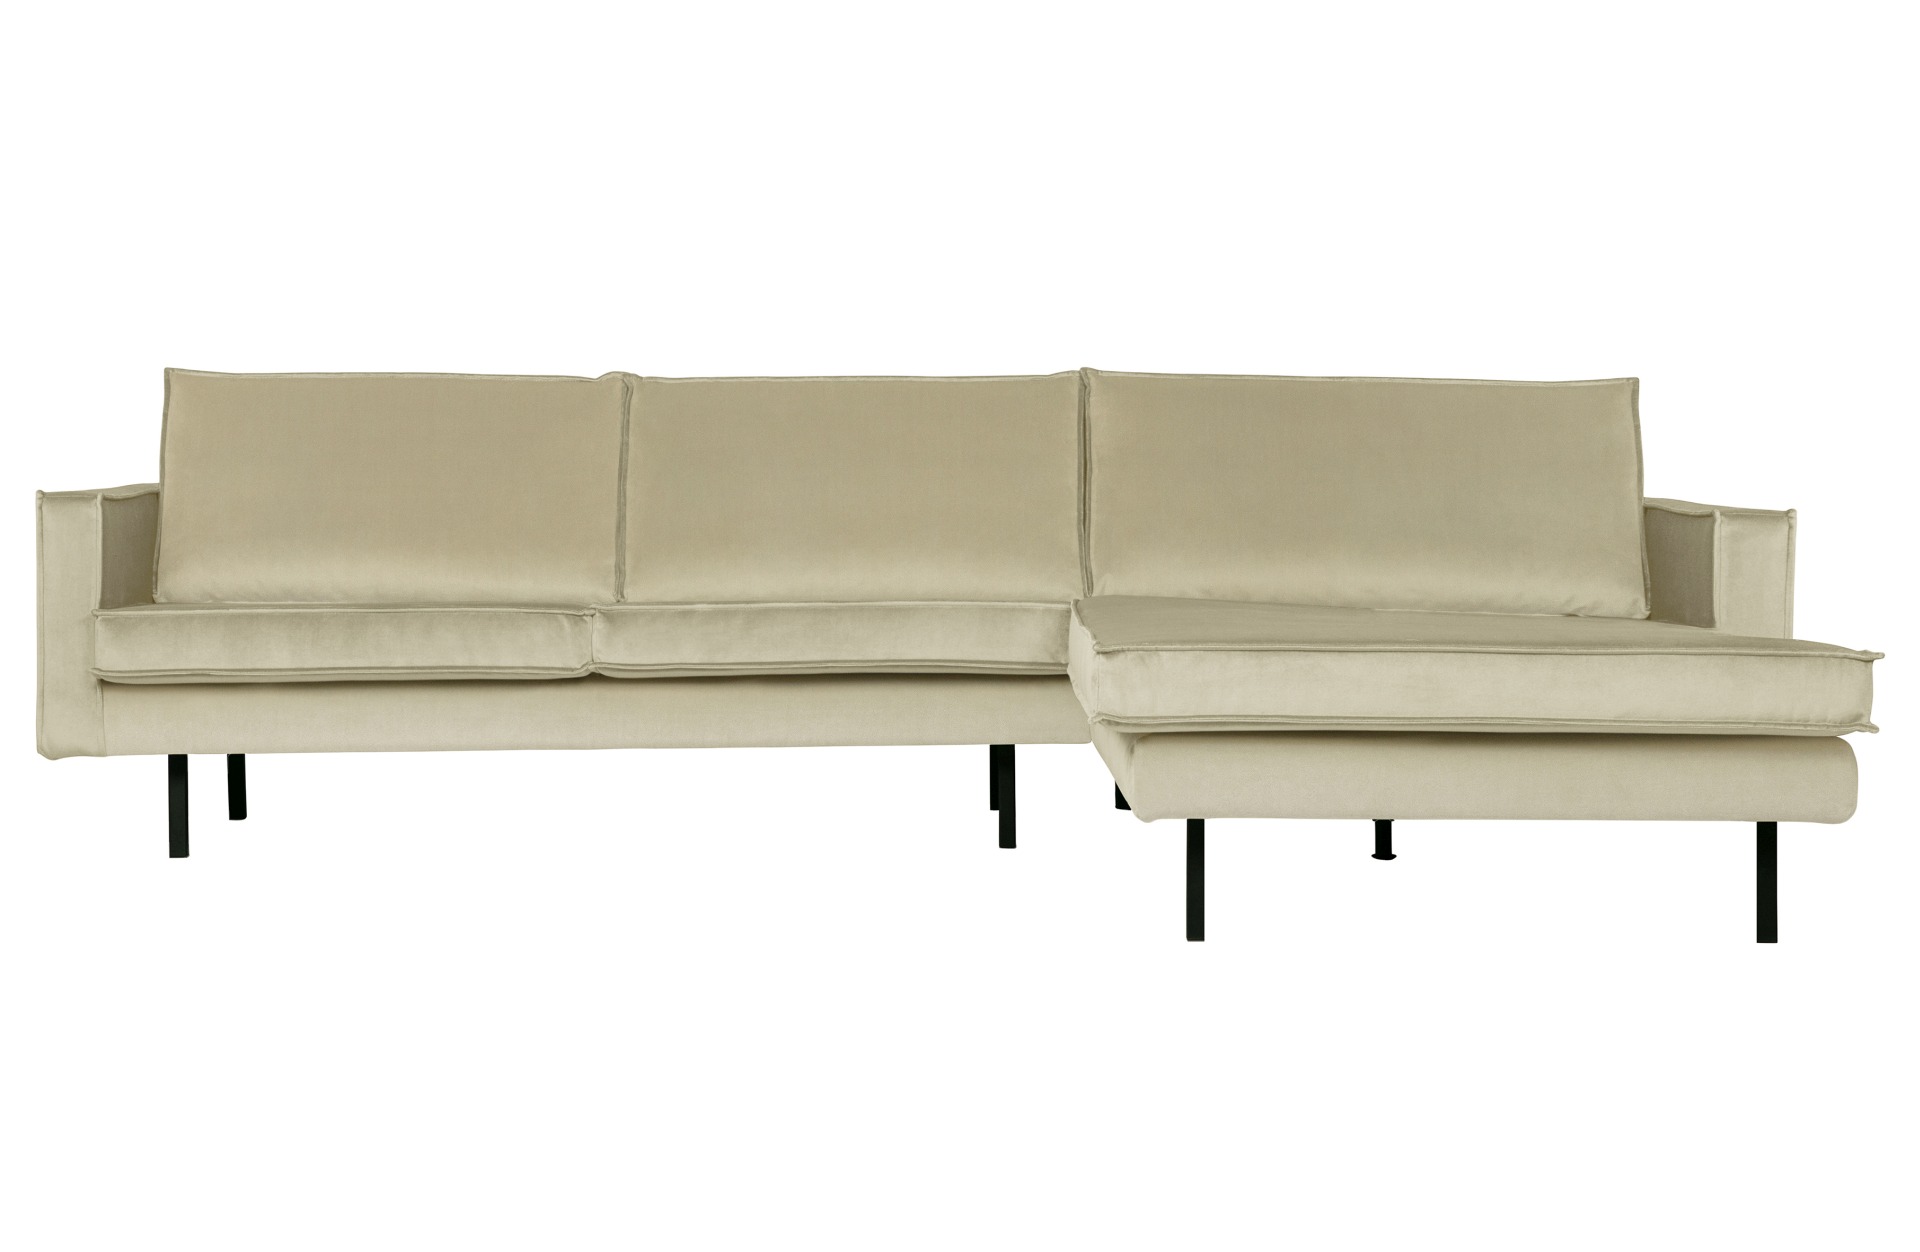 Das Ecksofa Sofa Rodeo Chaiselounge überzeugt mit seinem modernem Design. Gefertigt wurde das Sofa aus einem Samt Bezug, welcher einen Pistazie Farbton besitzt. Die Beine sind aus Metall und haben eine schwarze Farbe.